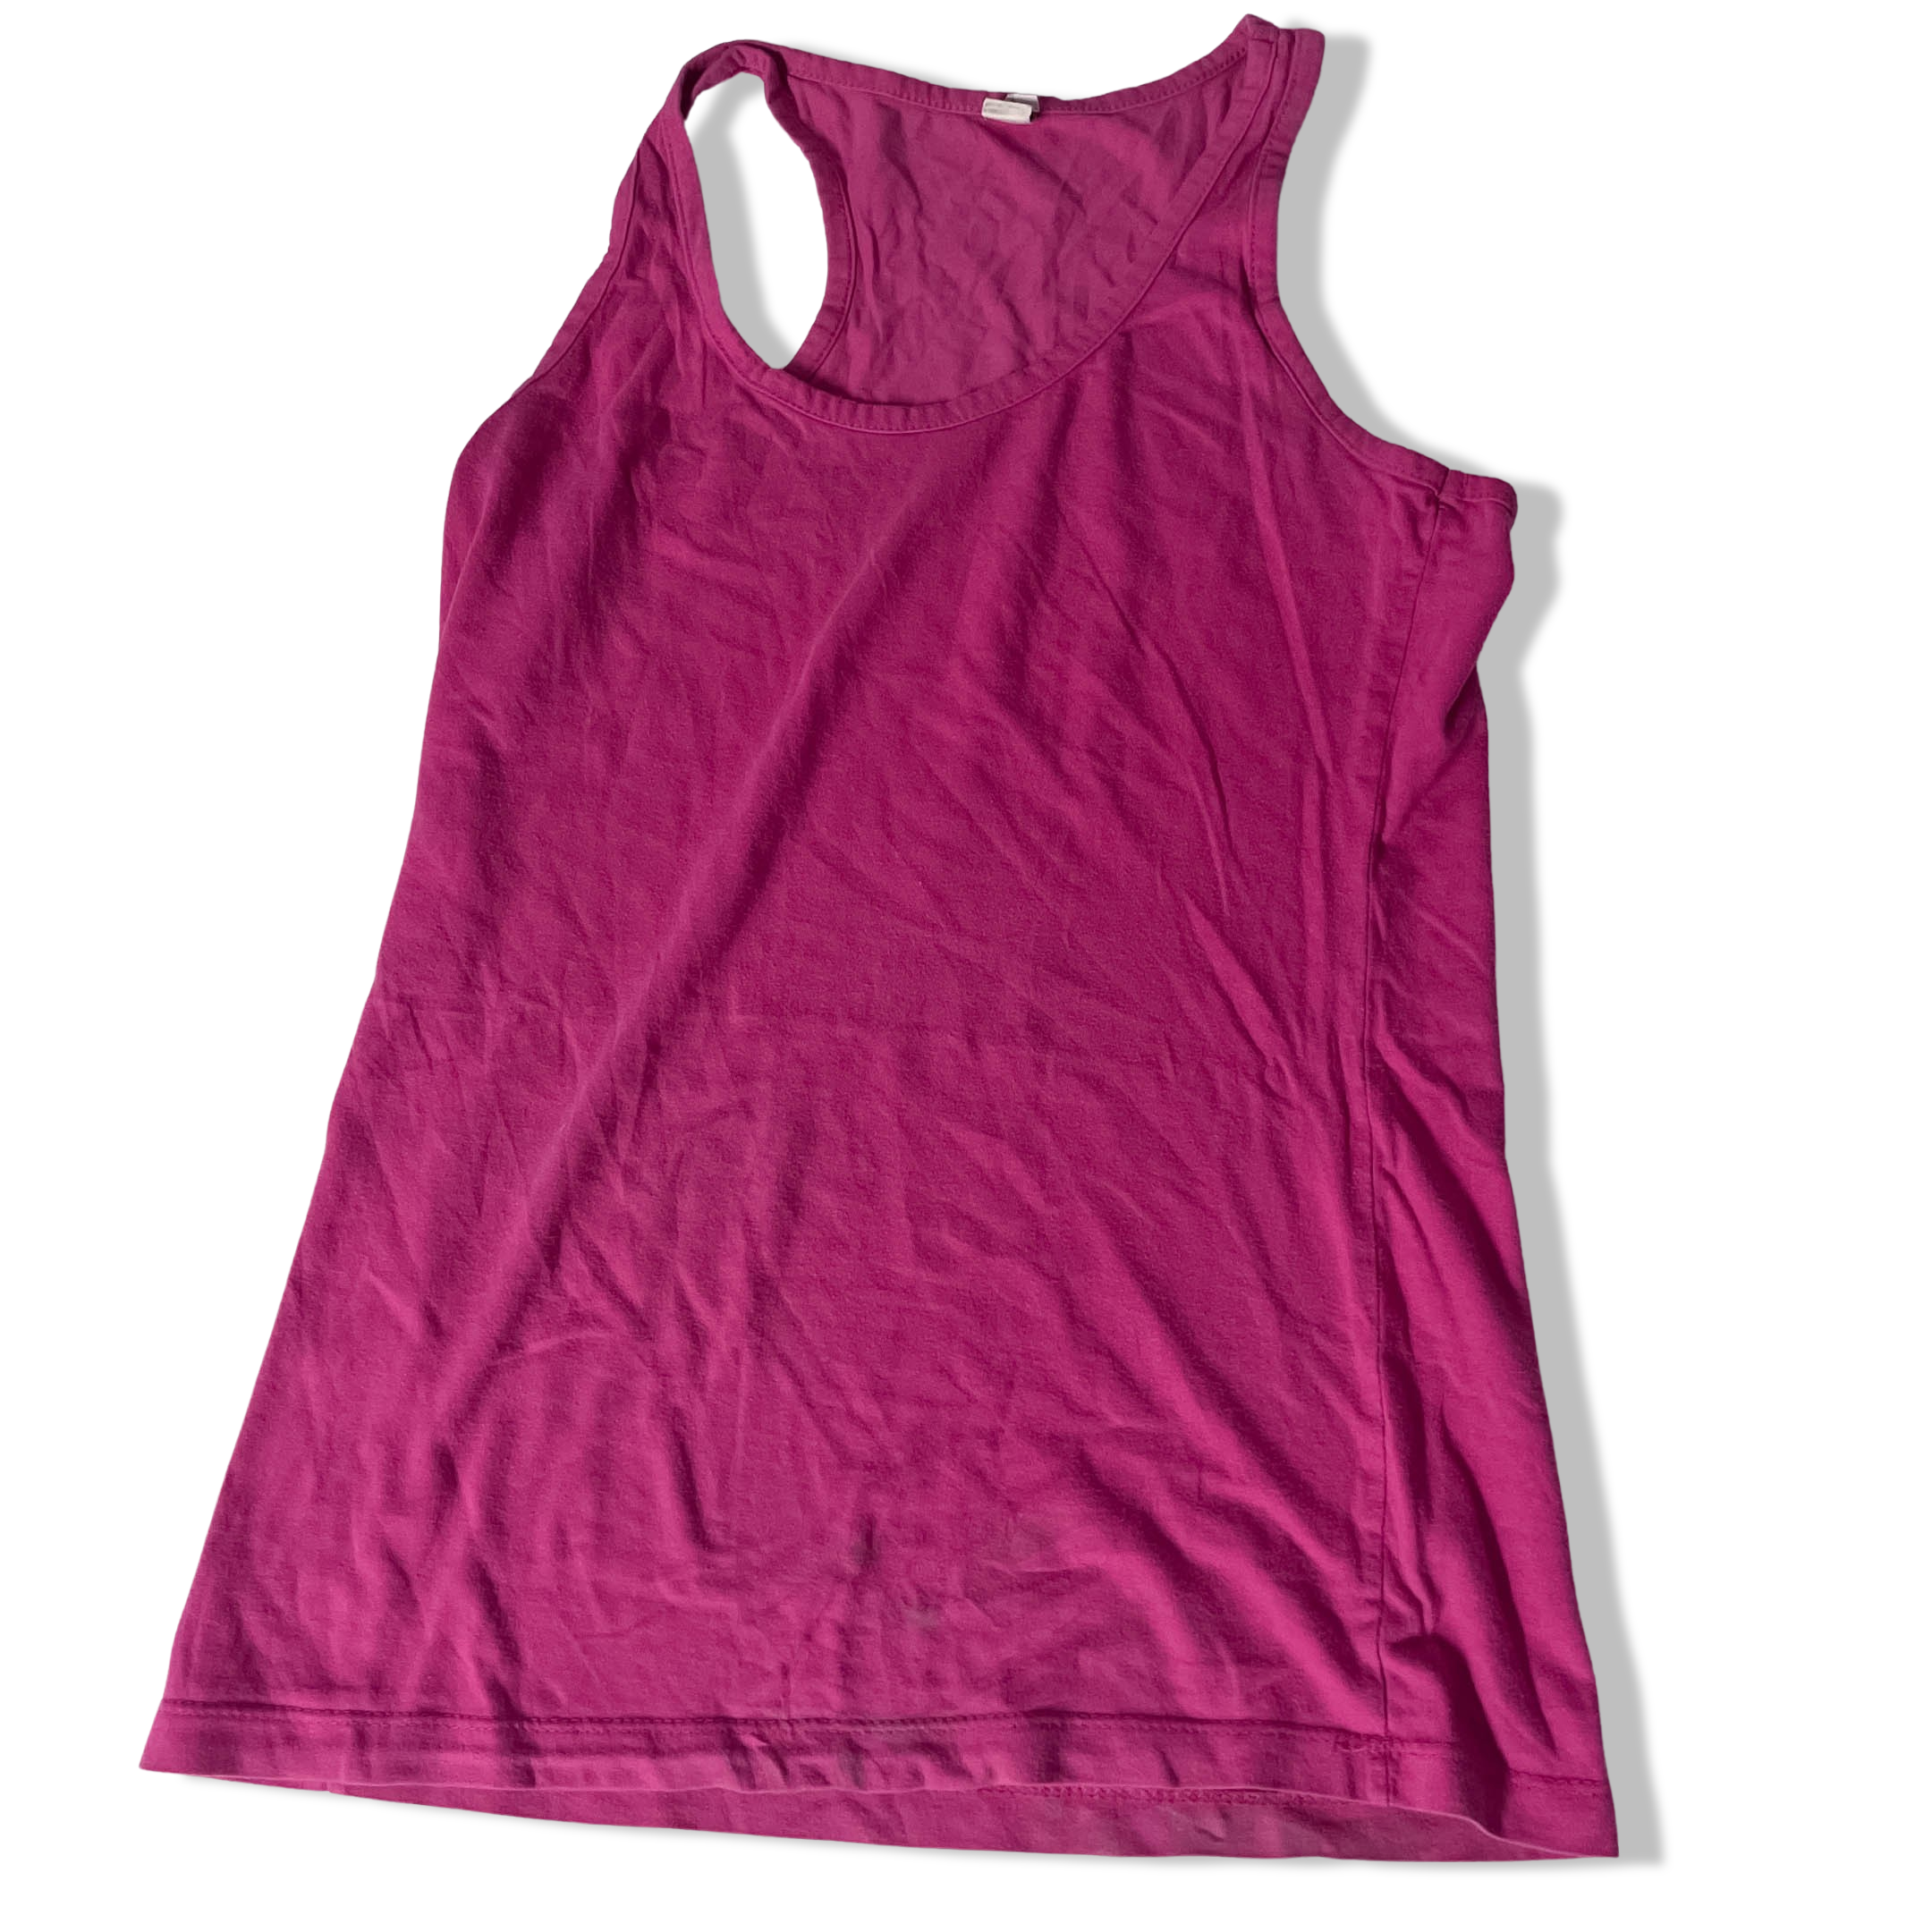 Vintage Pink medium sleeveless tshirt